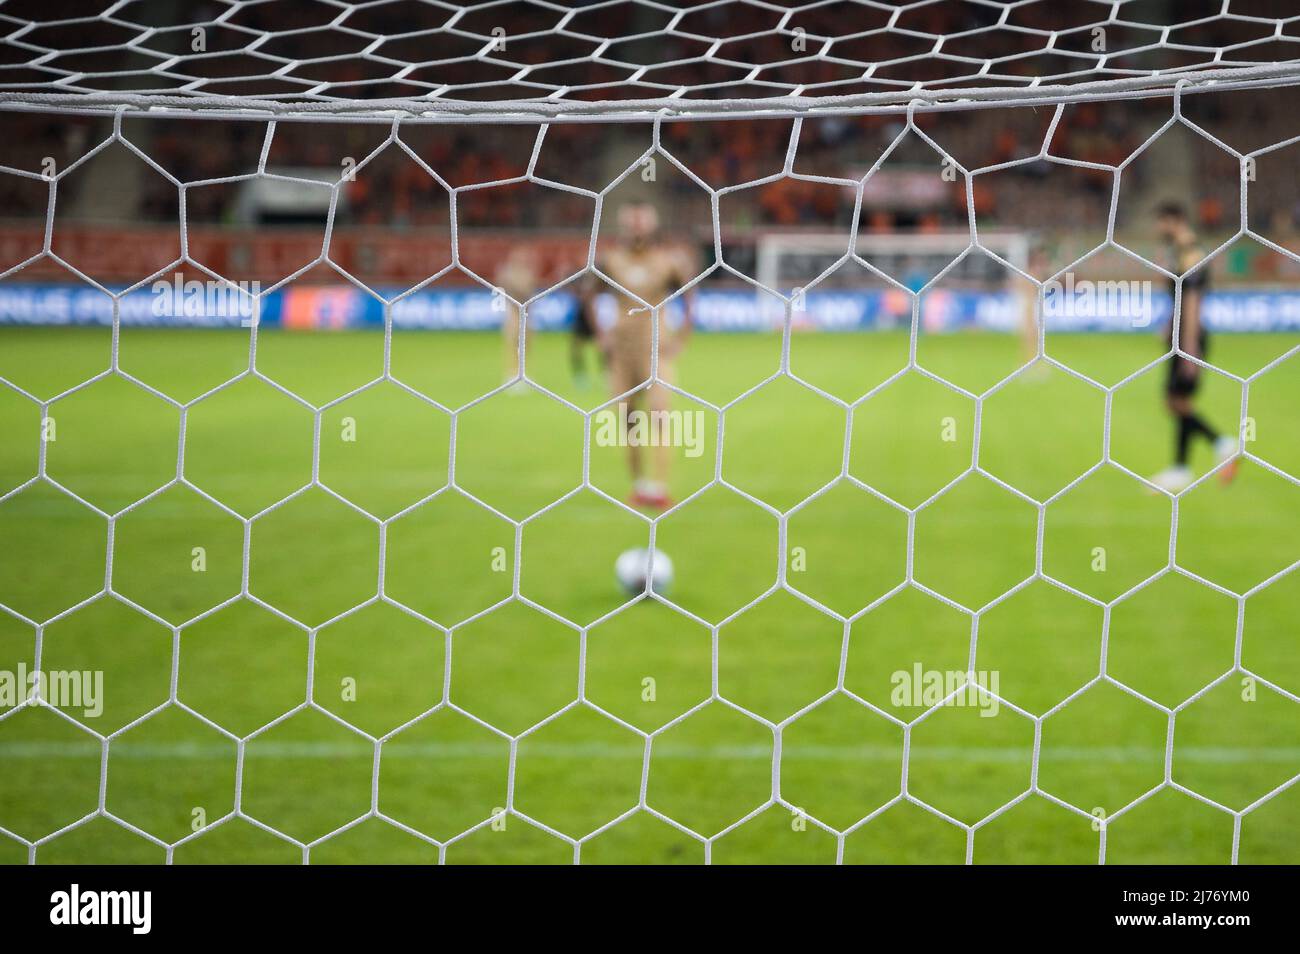 NET in der Fußball-Tor Elfmeterschießen im Hintergrund. Stockfoto